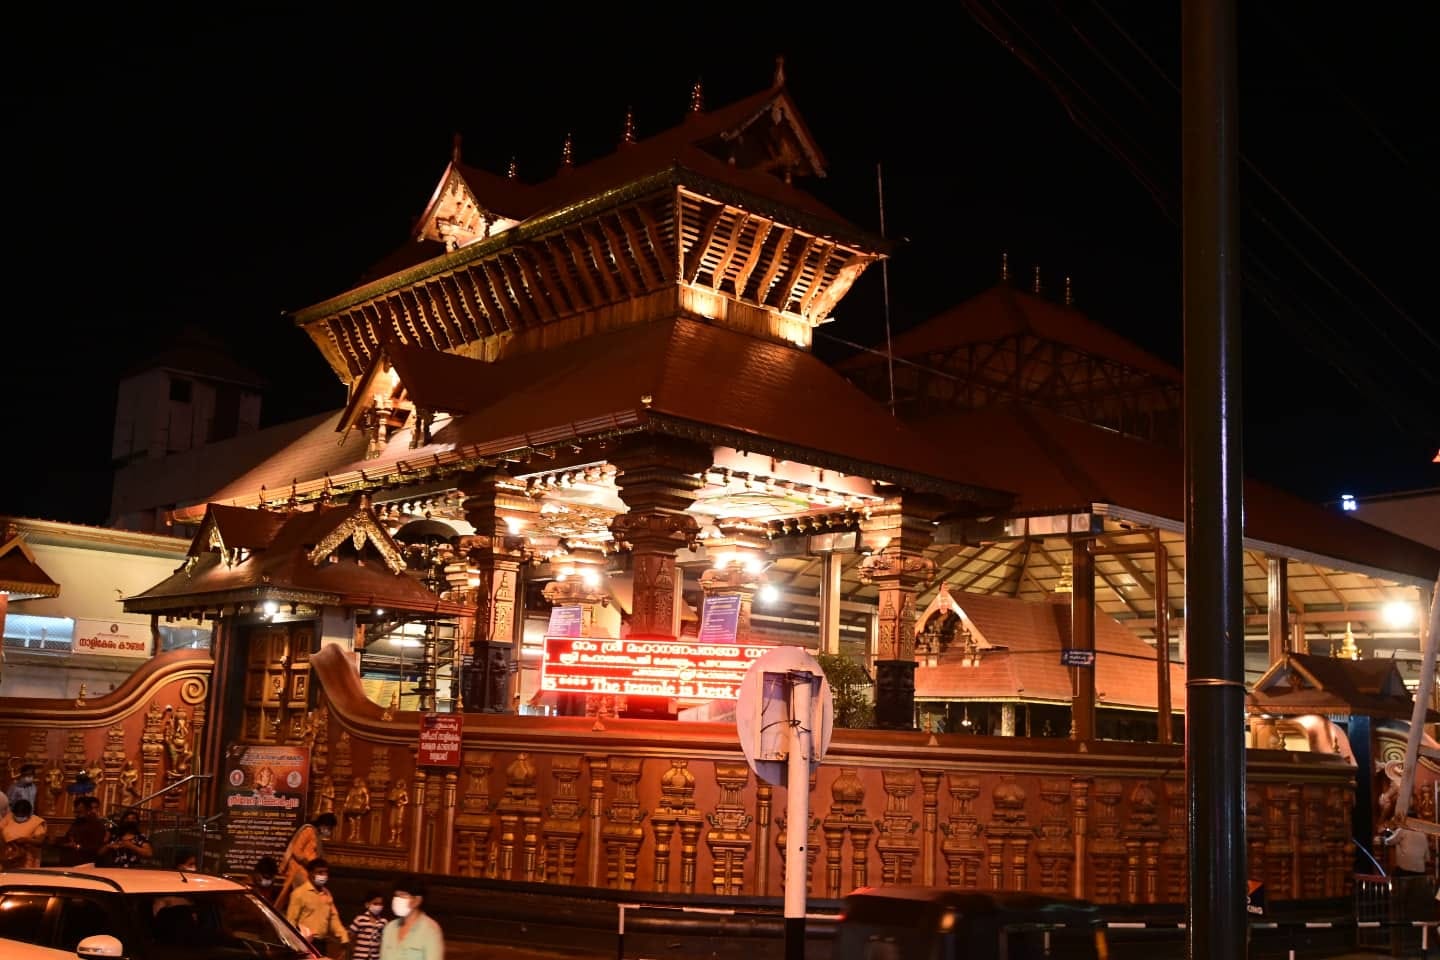 Pazhavangadi Ganapathy Temple Thiruvananthapuram